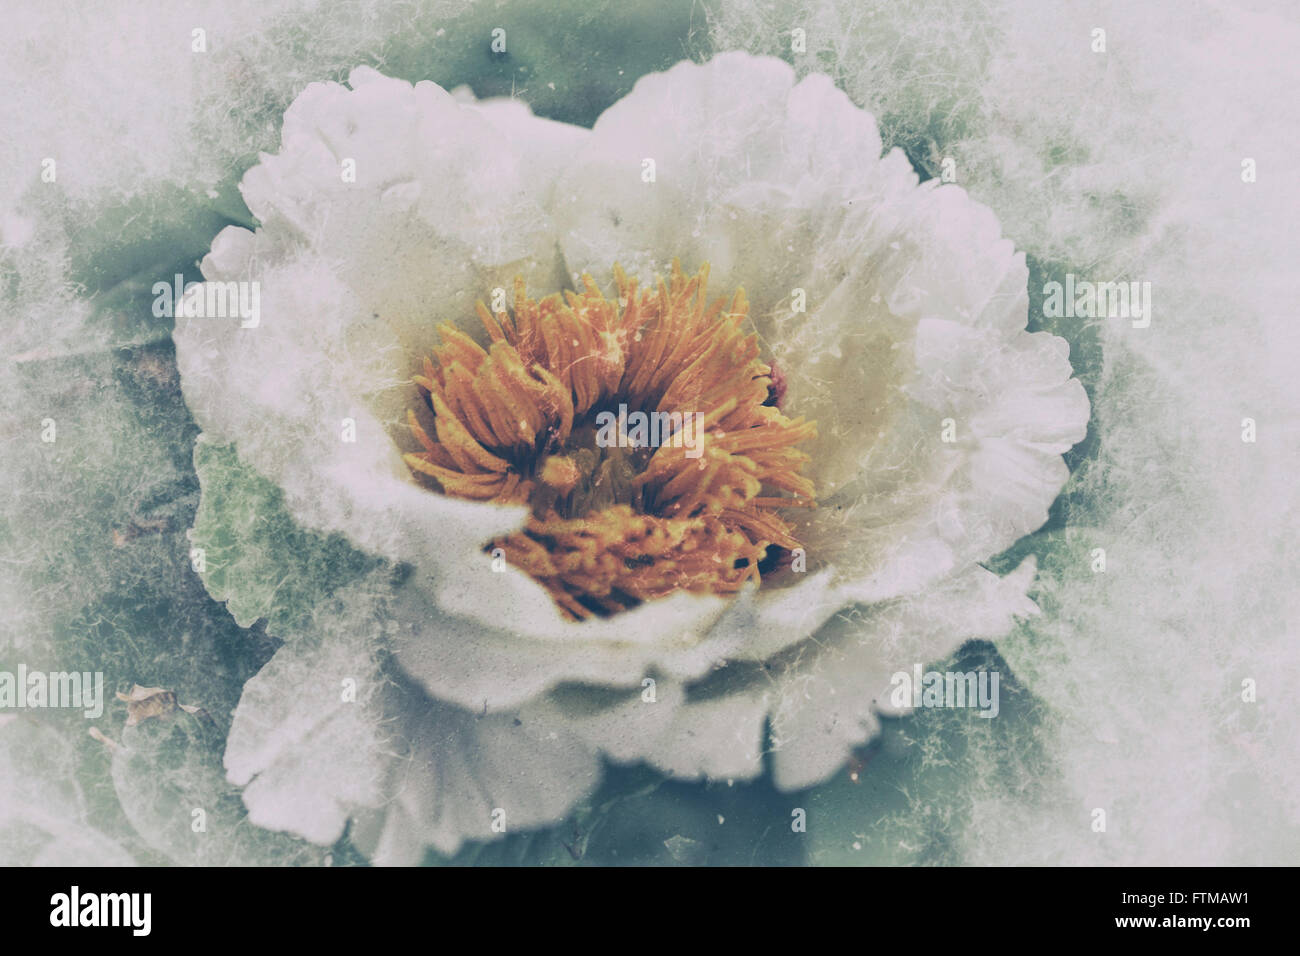 Image de vintage,fleur de pivoine nostalgique dans un jardin. Banque D'Images